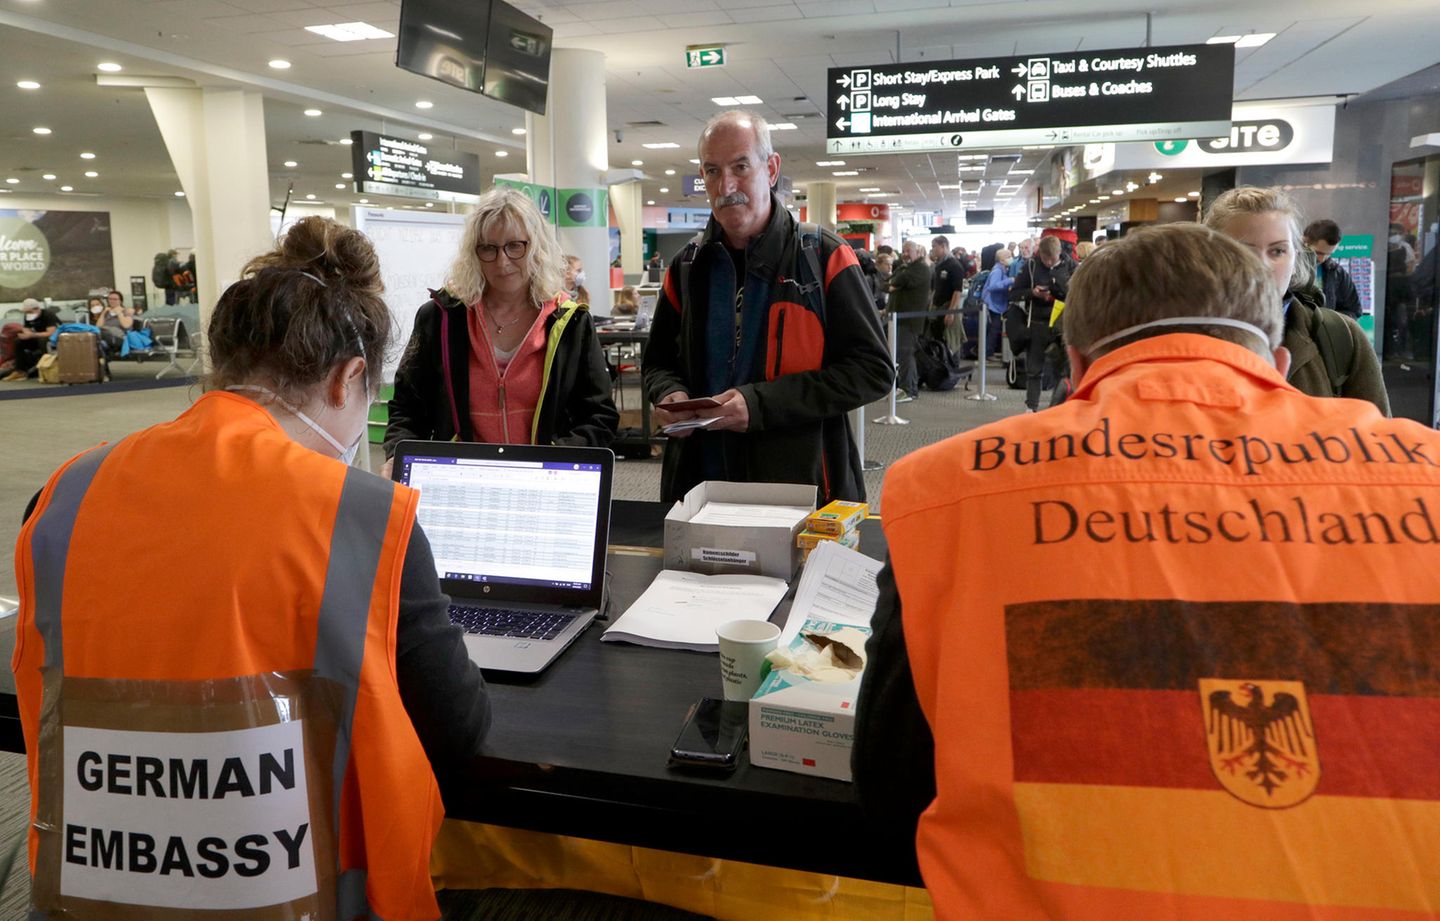 Am Flughafen Christchurch in Neuseeland warten Touristen am Terminalauf die Kontrolle durch Mitarbeiter der deutschen Botschaft, bevor sie für einen Flug nach Deutschland eingecheckt werden.